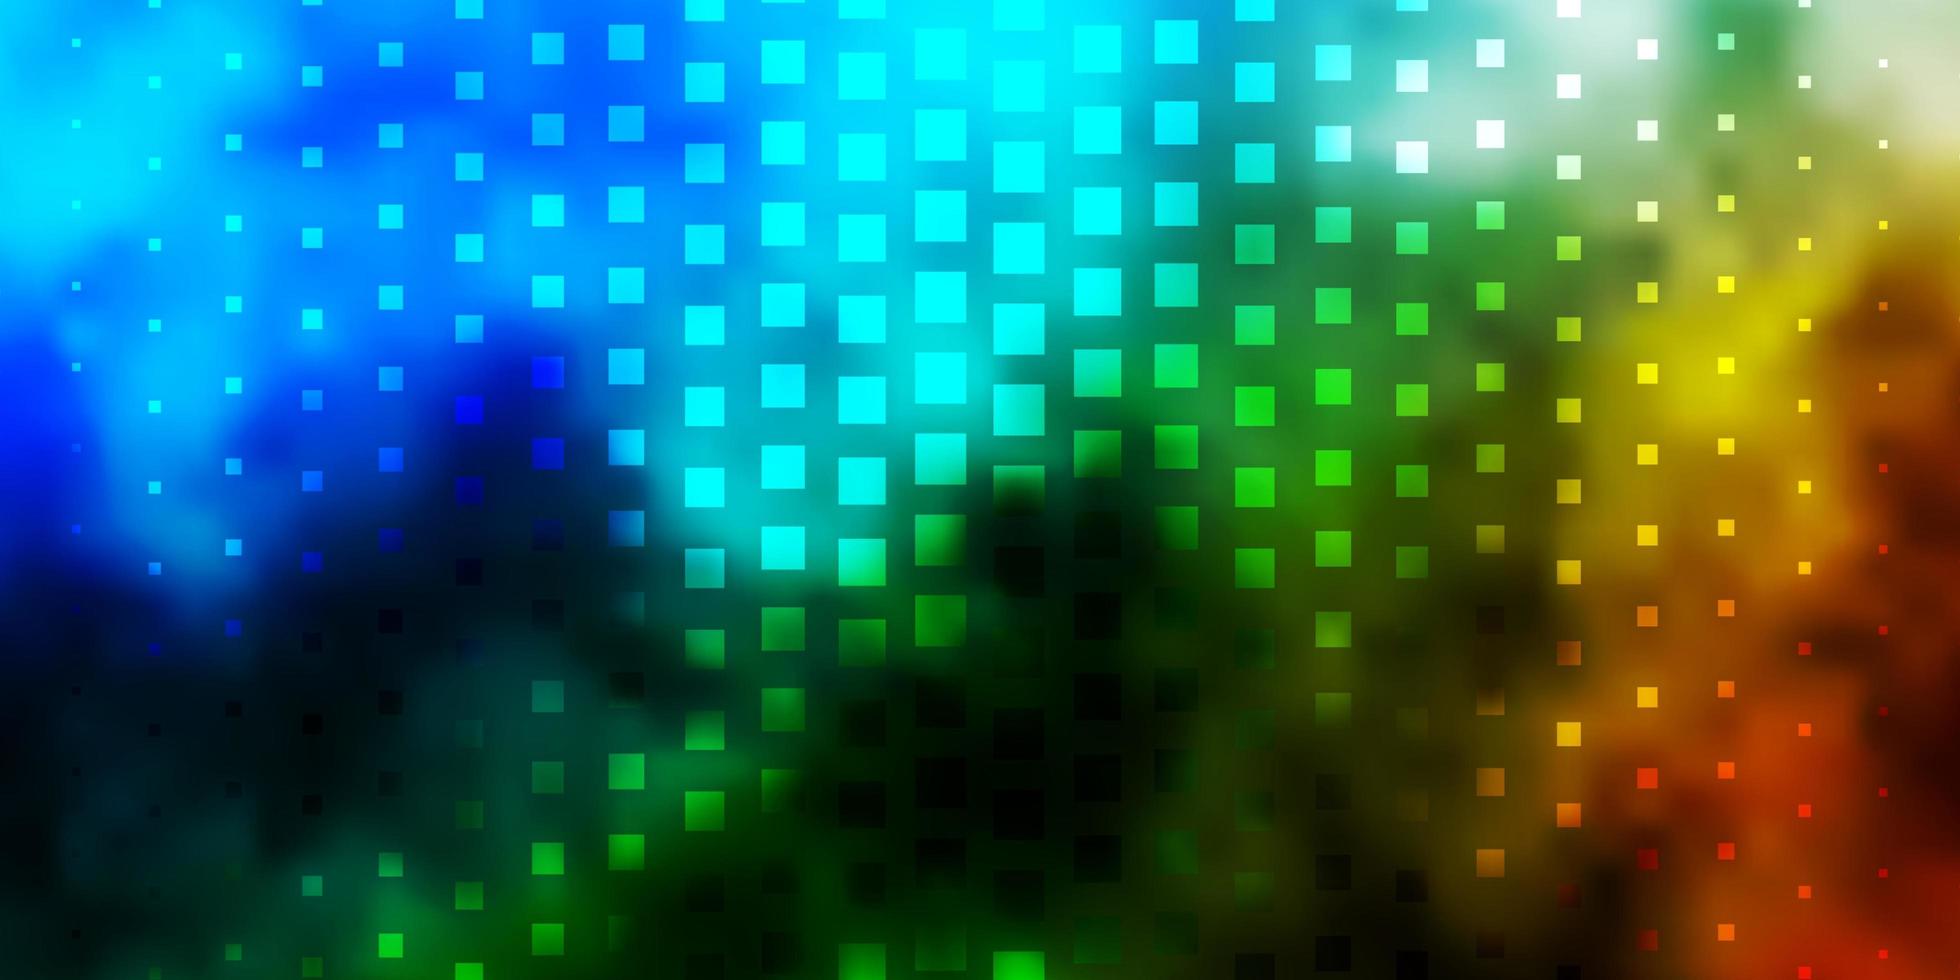 plantilla de vector azul claro, verde con rectángulos.